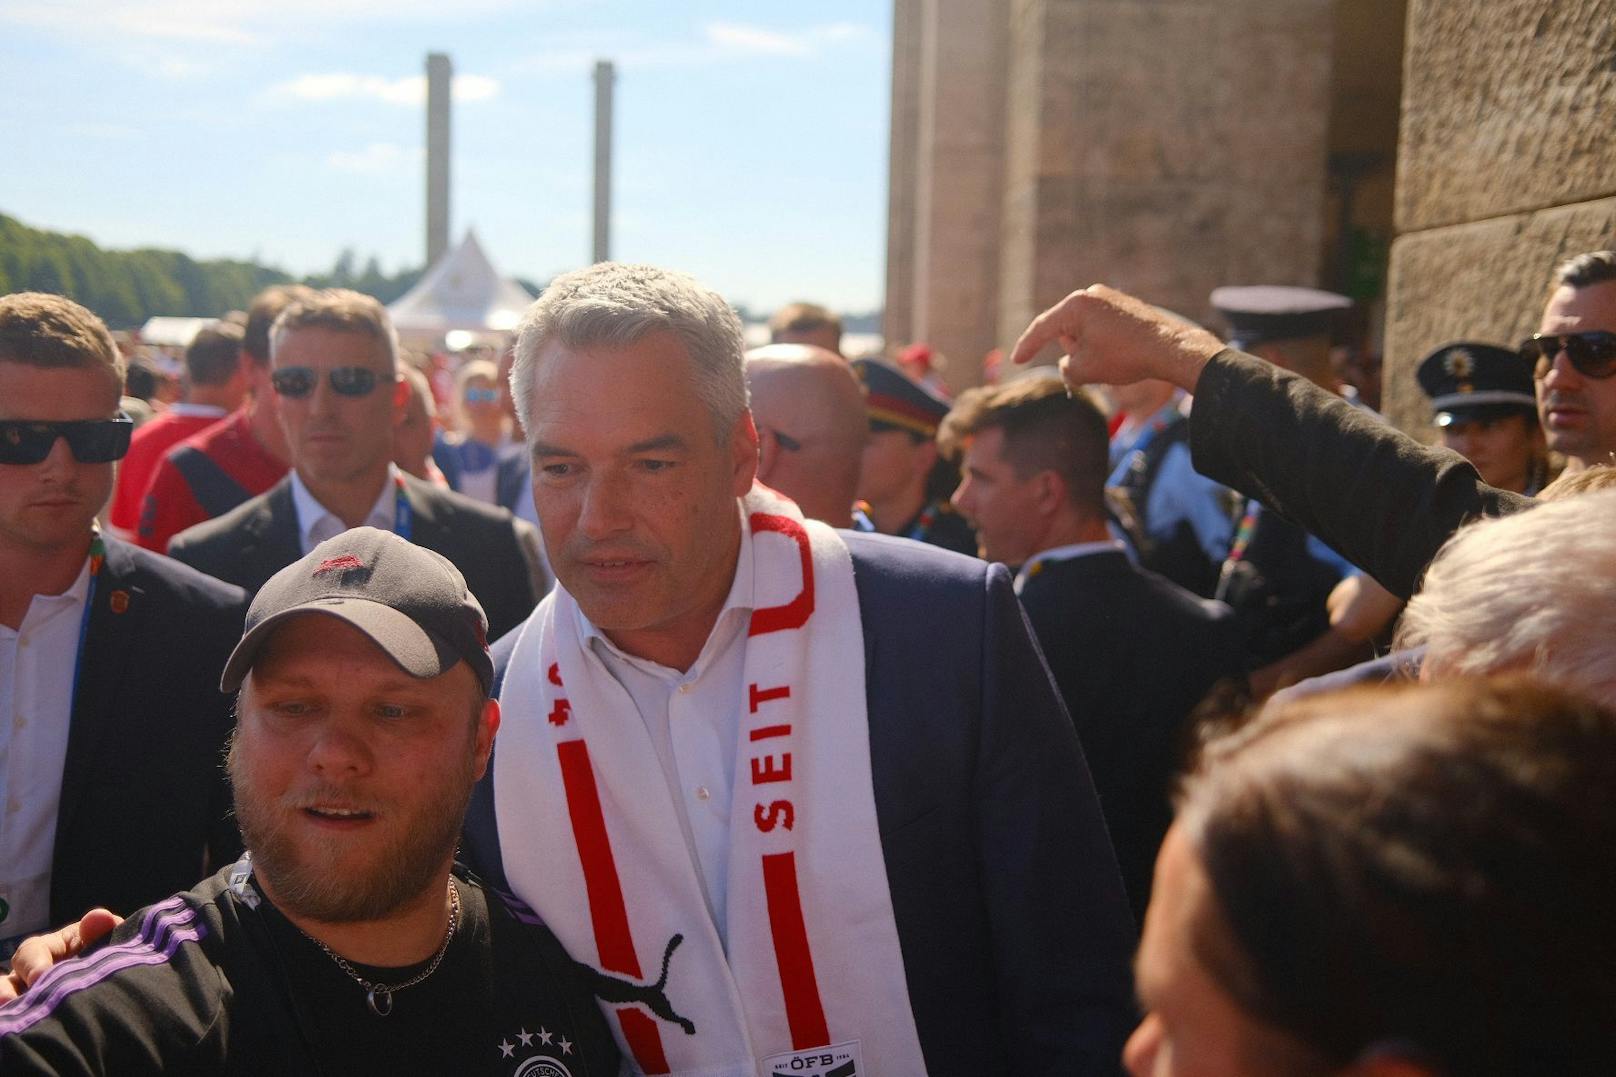 Bundeskanzler Karl Nehammer (ÖVP) mit Fan-Schal vor dem Olympiastadion.